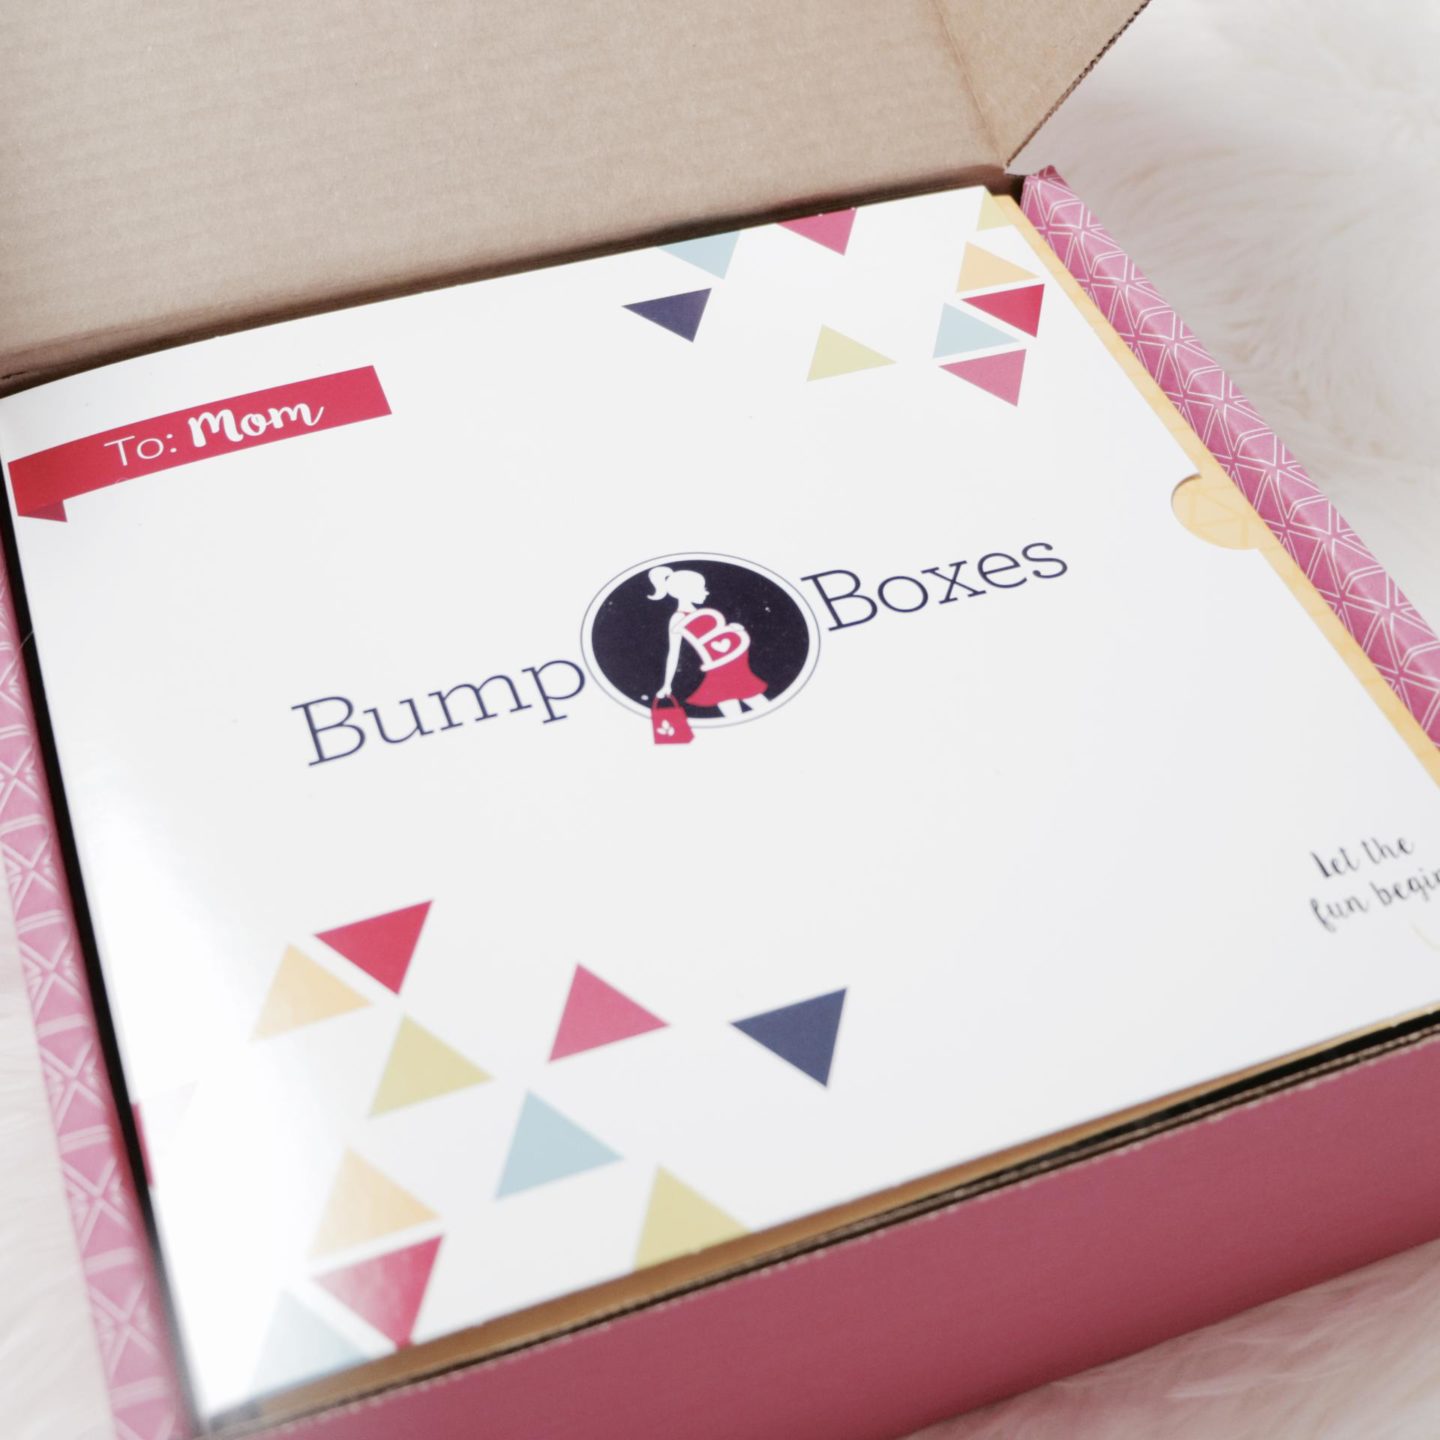 bump box second trimester